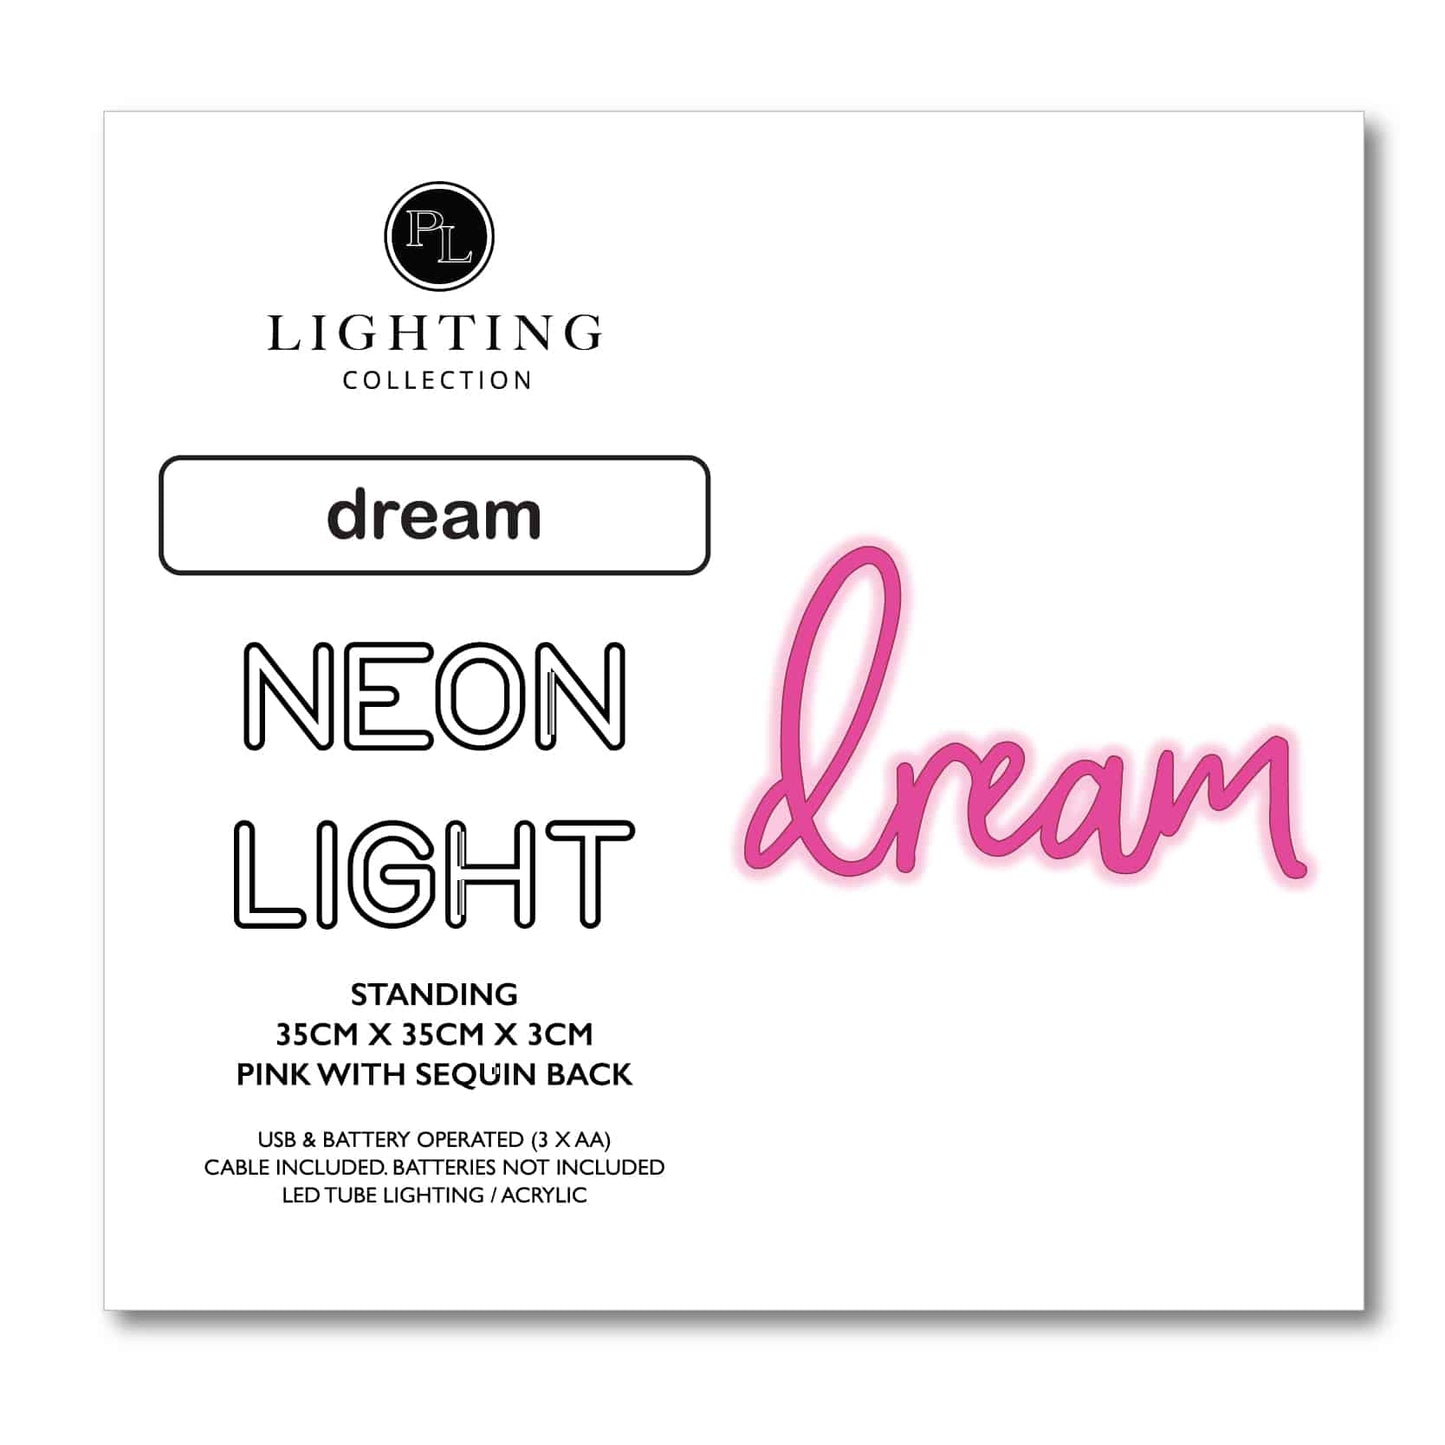 Dream LED Neon Light by Pilbeam Living